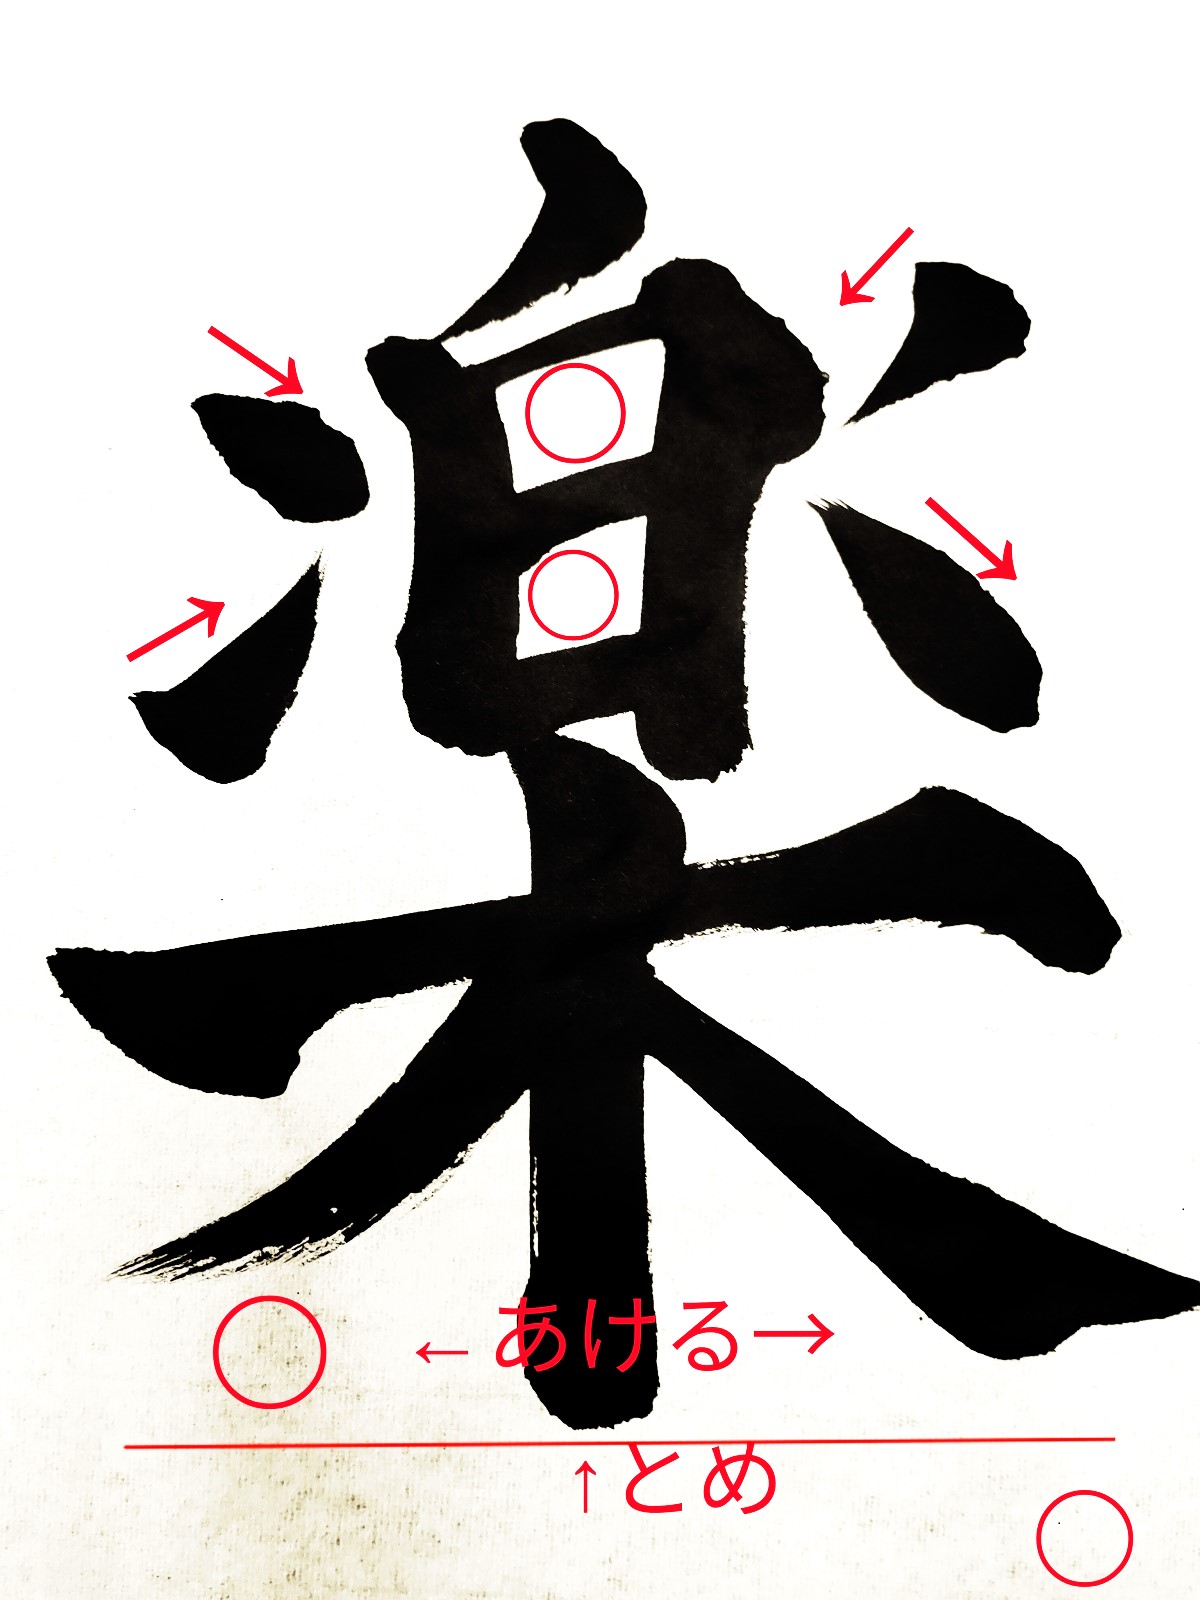 【楽】決意表明で選ばれやすい漢字「楽」の書道書き方と語源